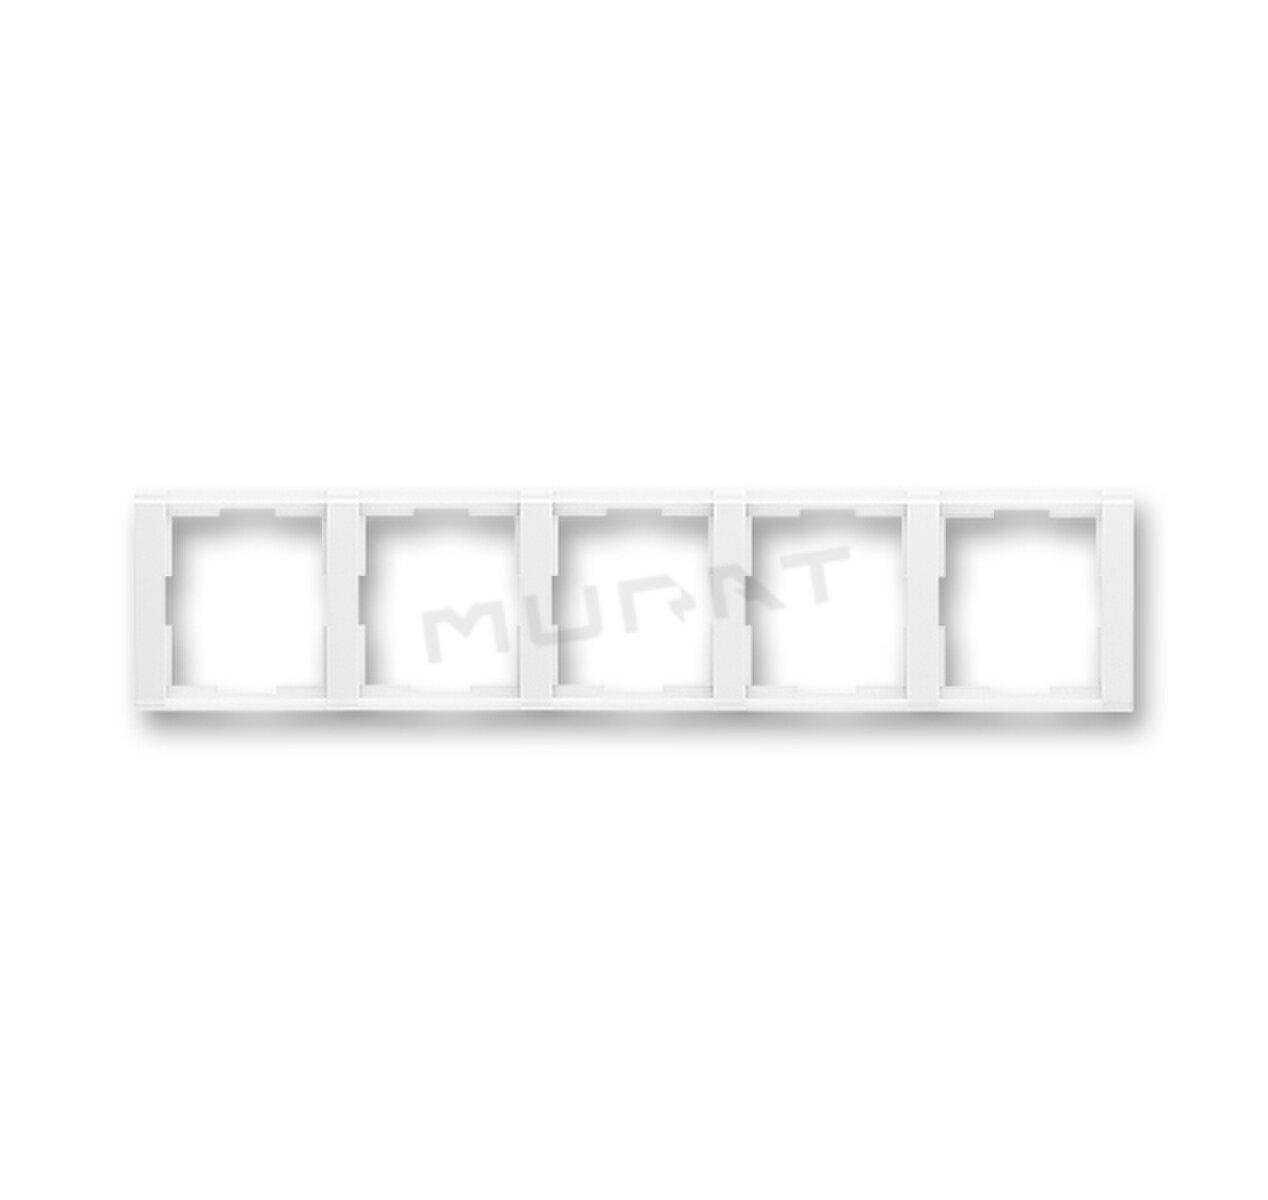 Time-rámček-5 vodorovný 3901F-A00150 03 biela/biela